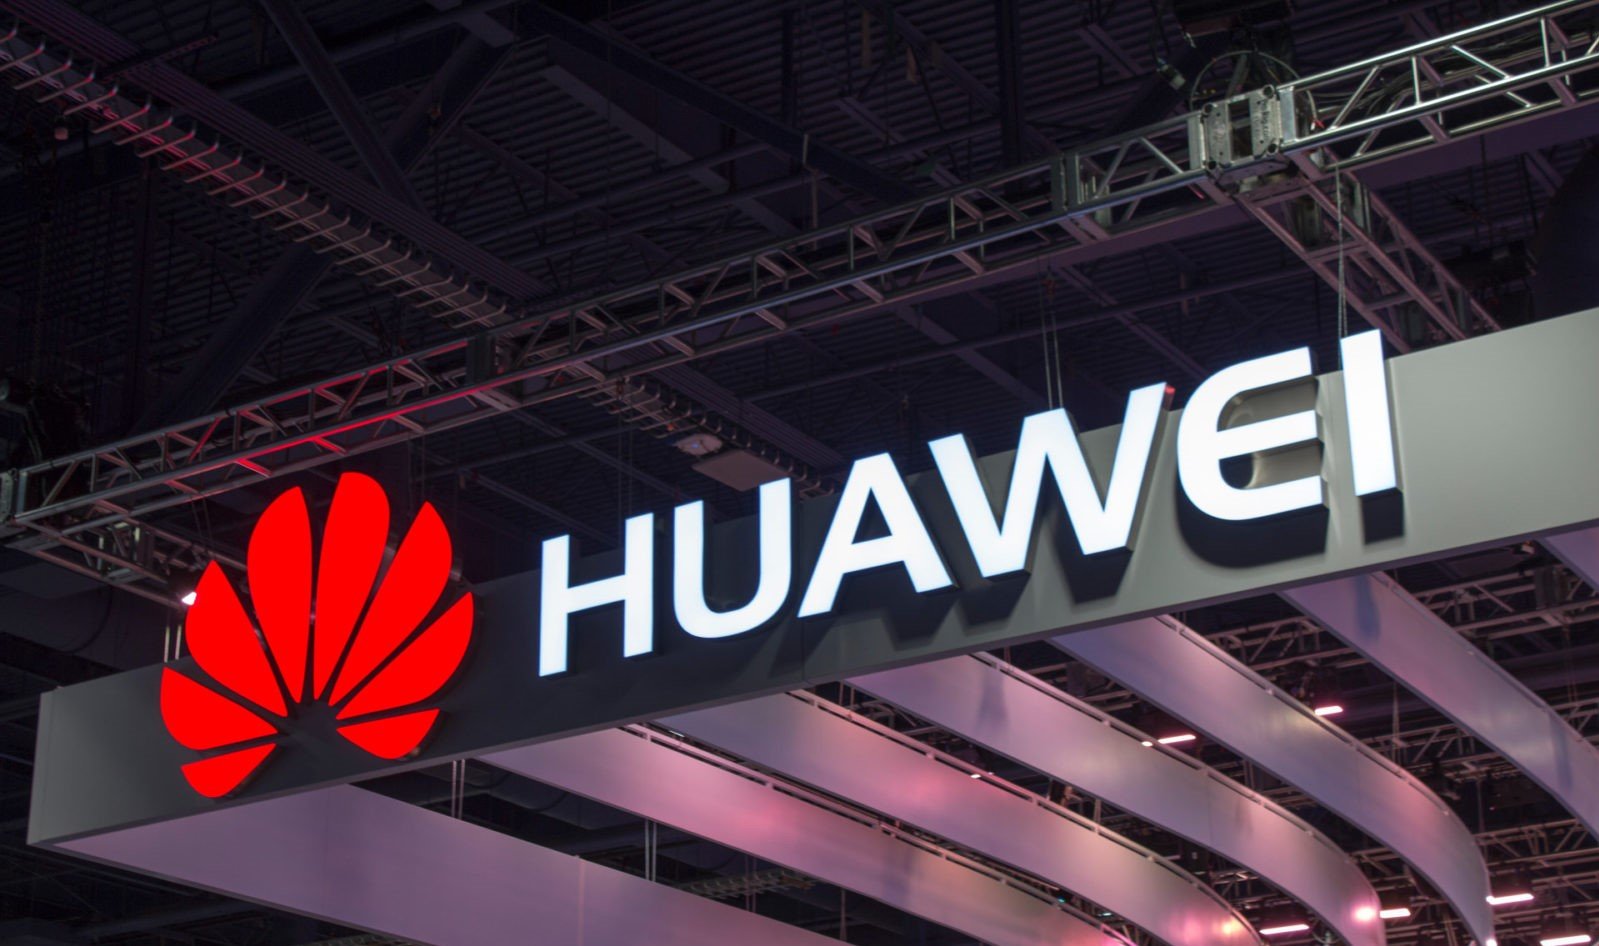 Huawei будет предлагать мощные процессоры и материнские платы для настольных компьютеров, но не готовые компьютерные системы, подтверждает компания